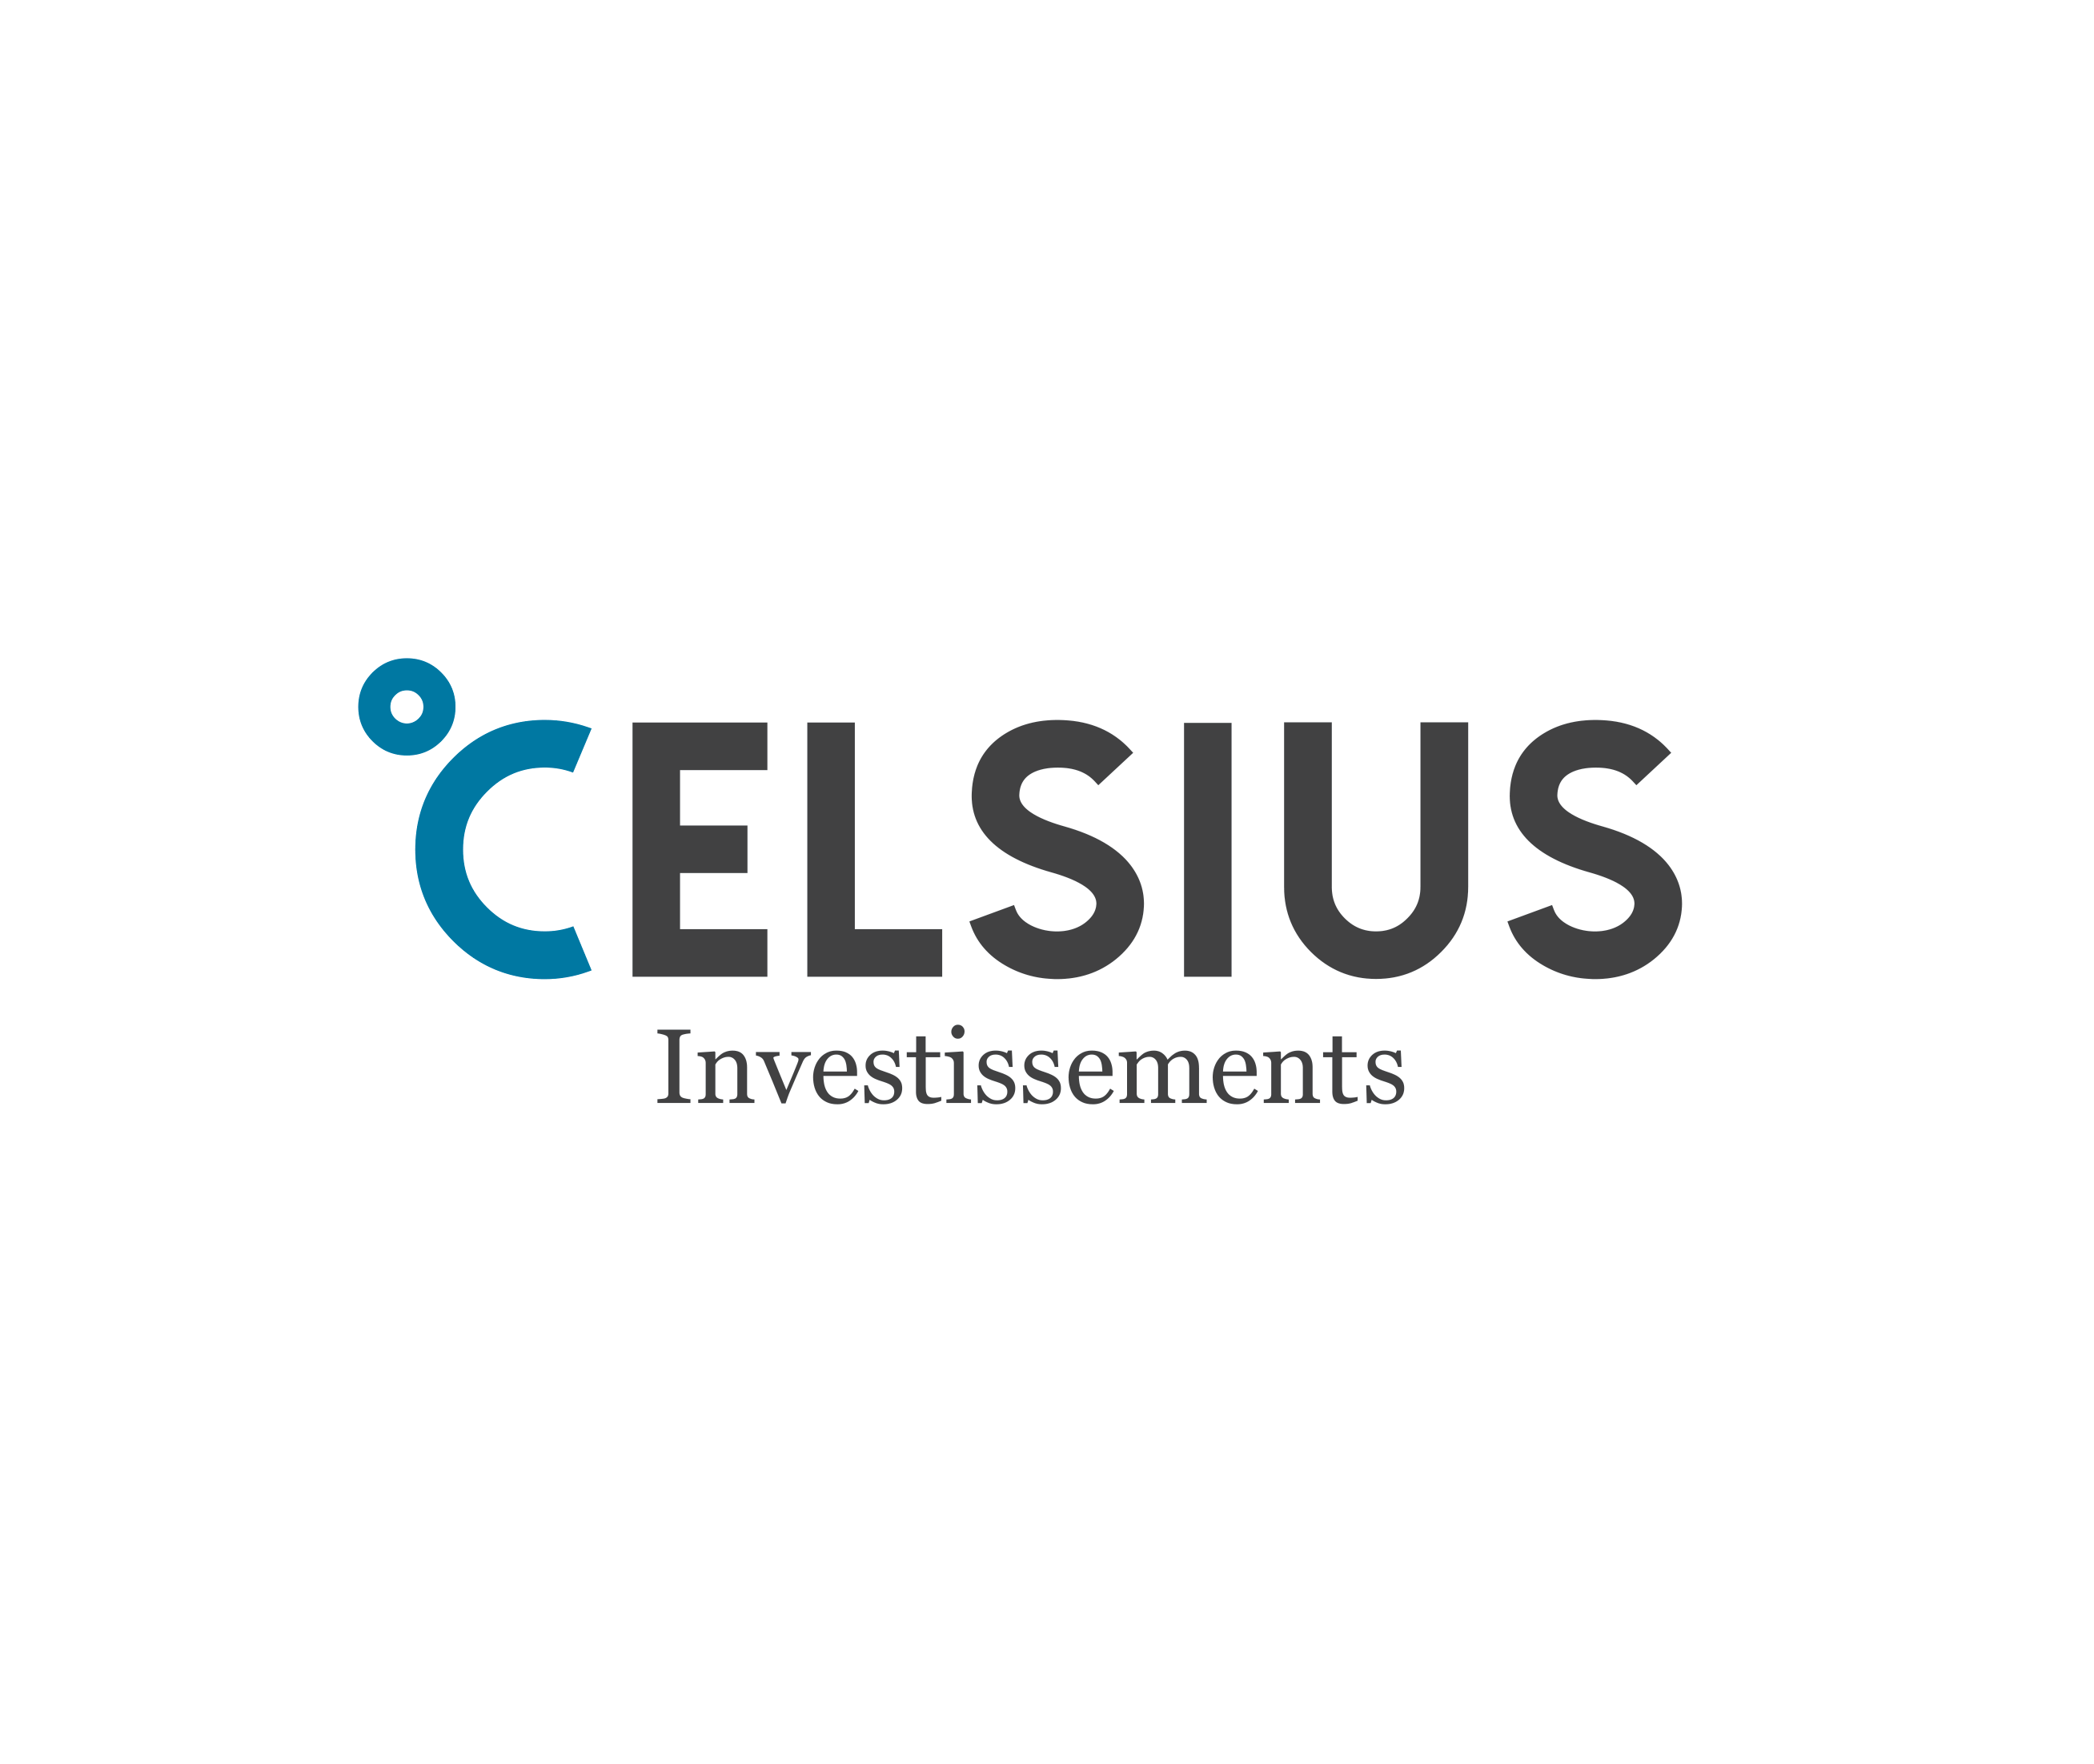 Celsius investissement logo (1)